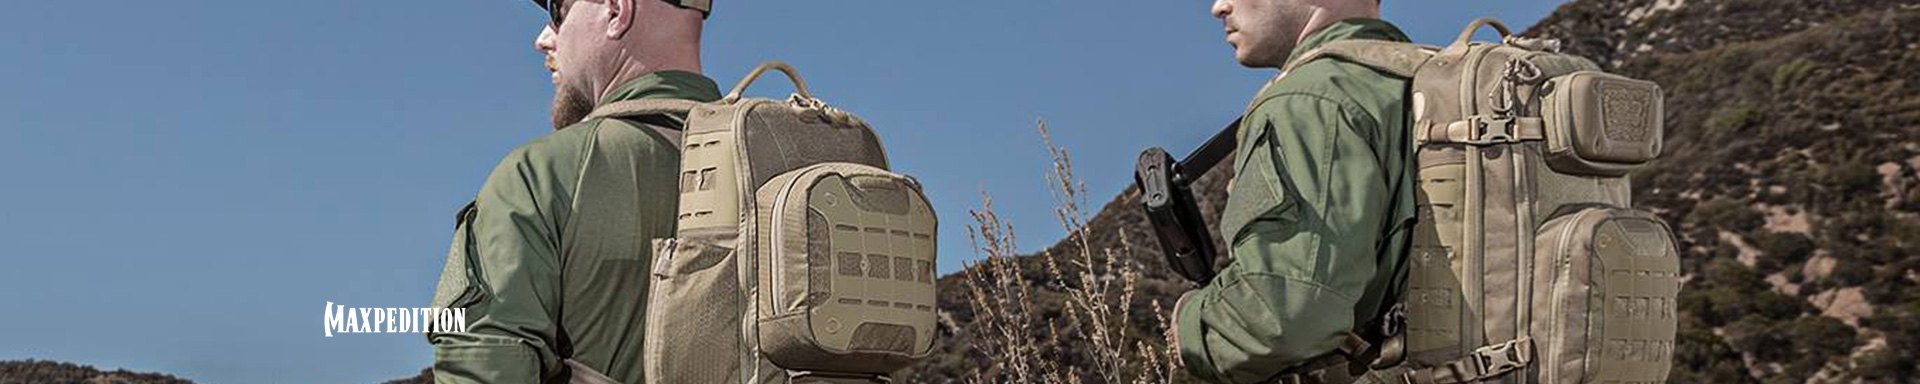 Maxpedition Tactical Bags